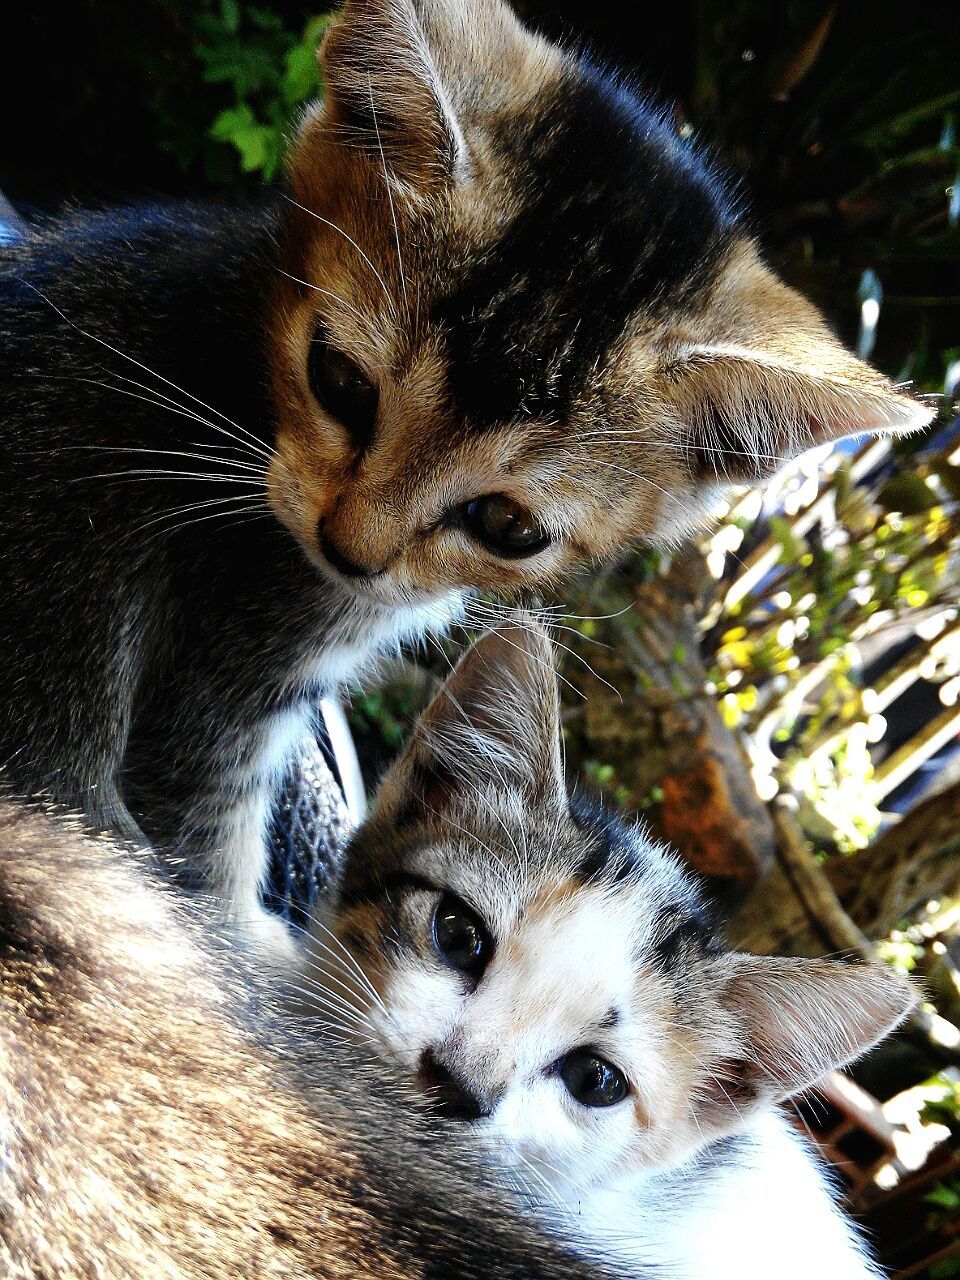 Kittens looking down